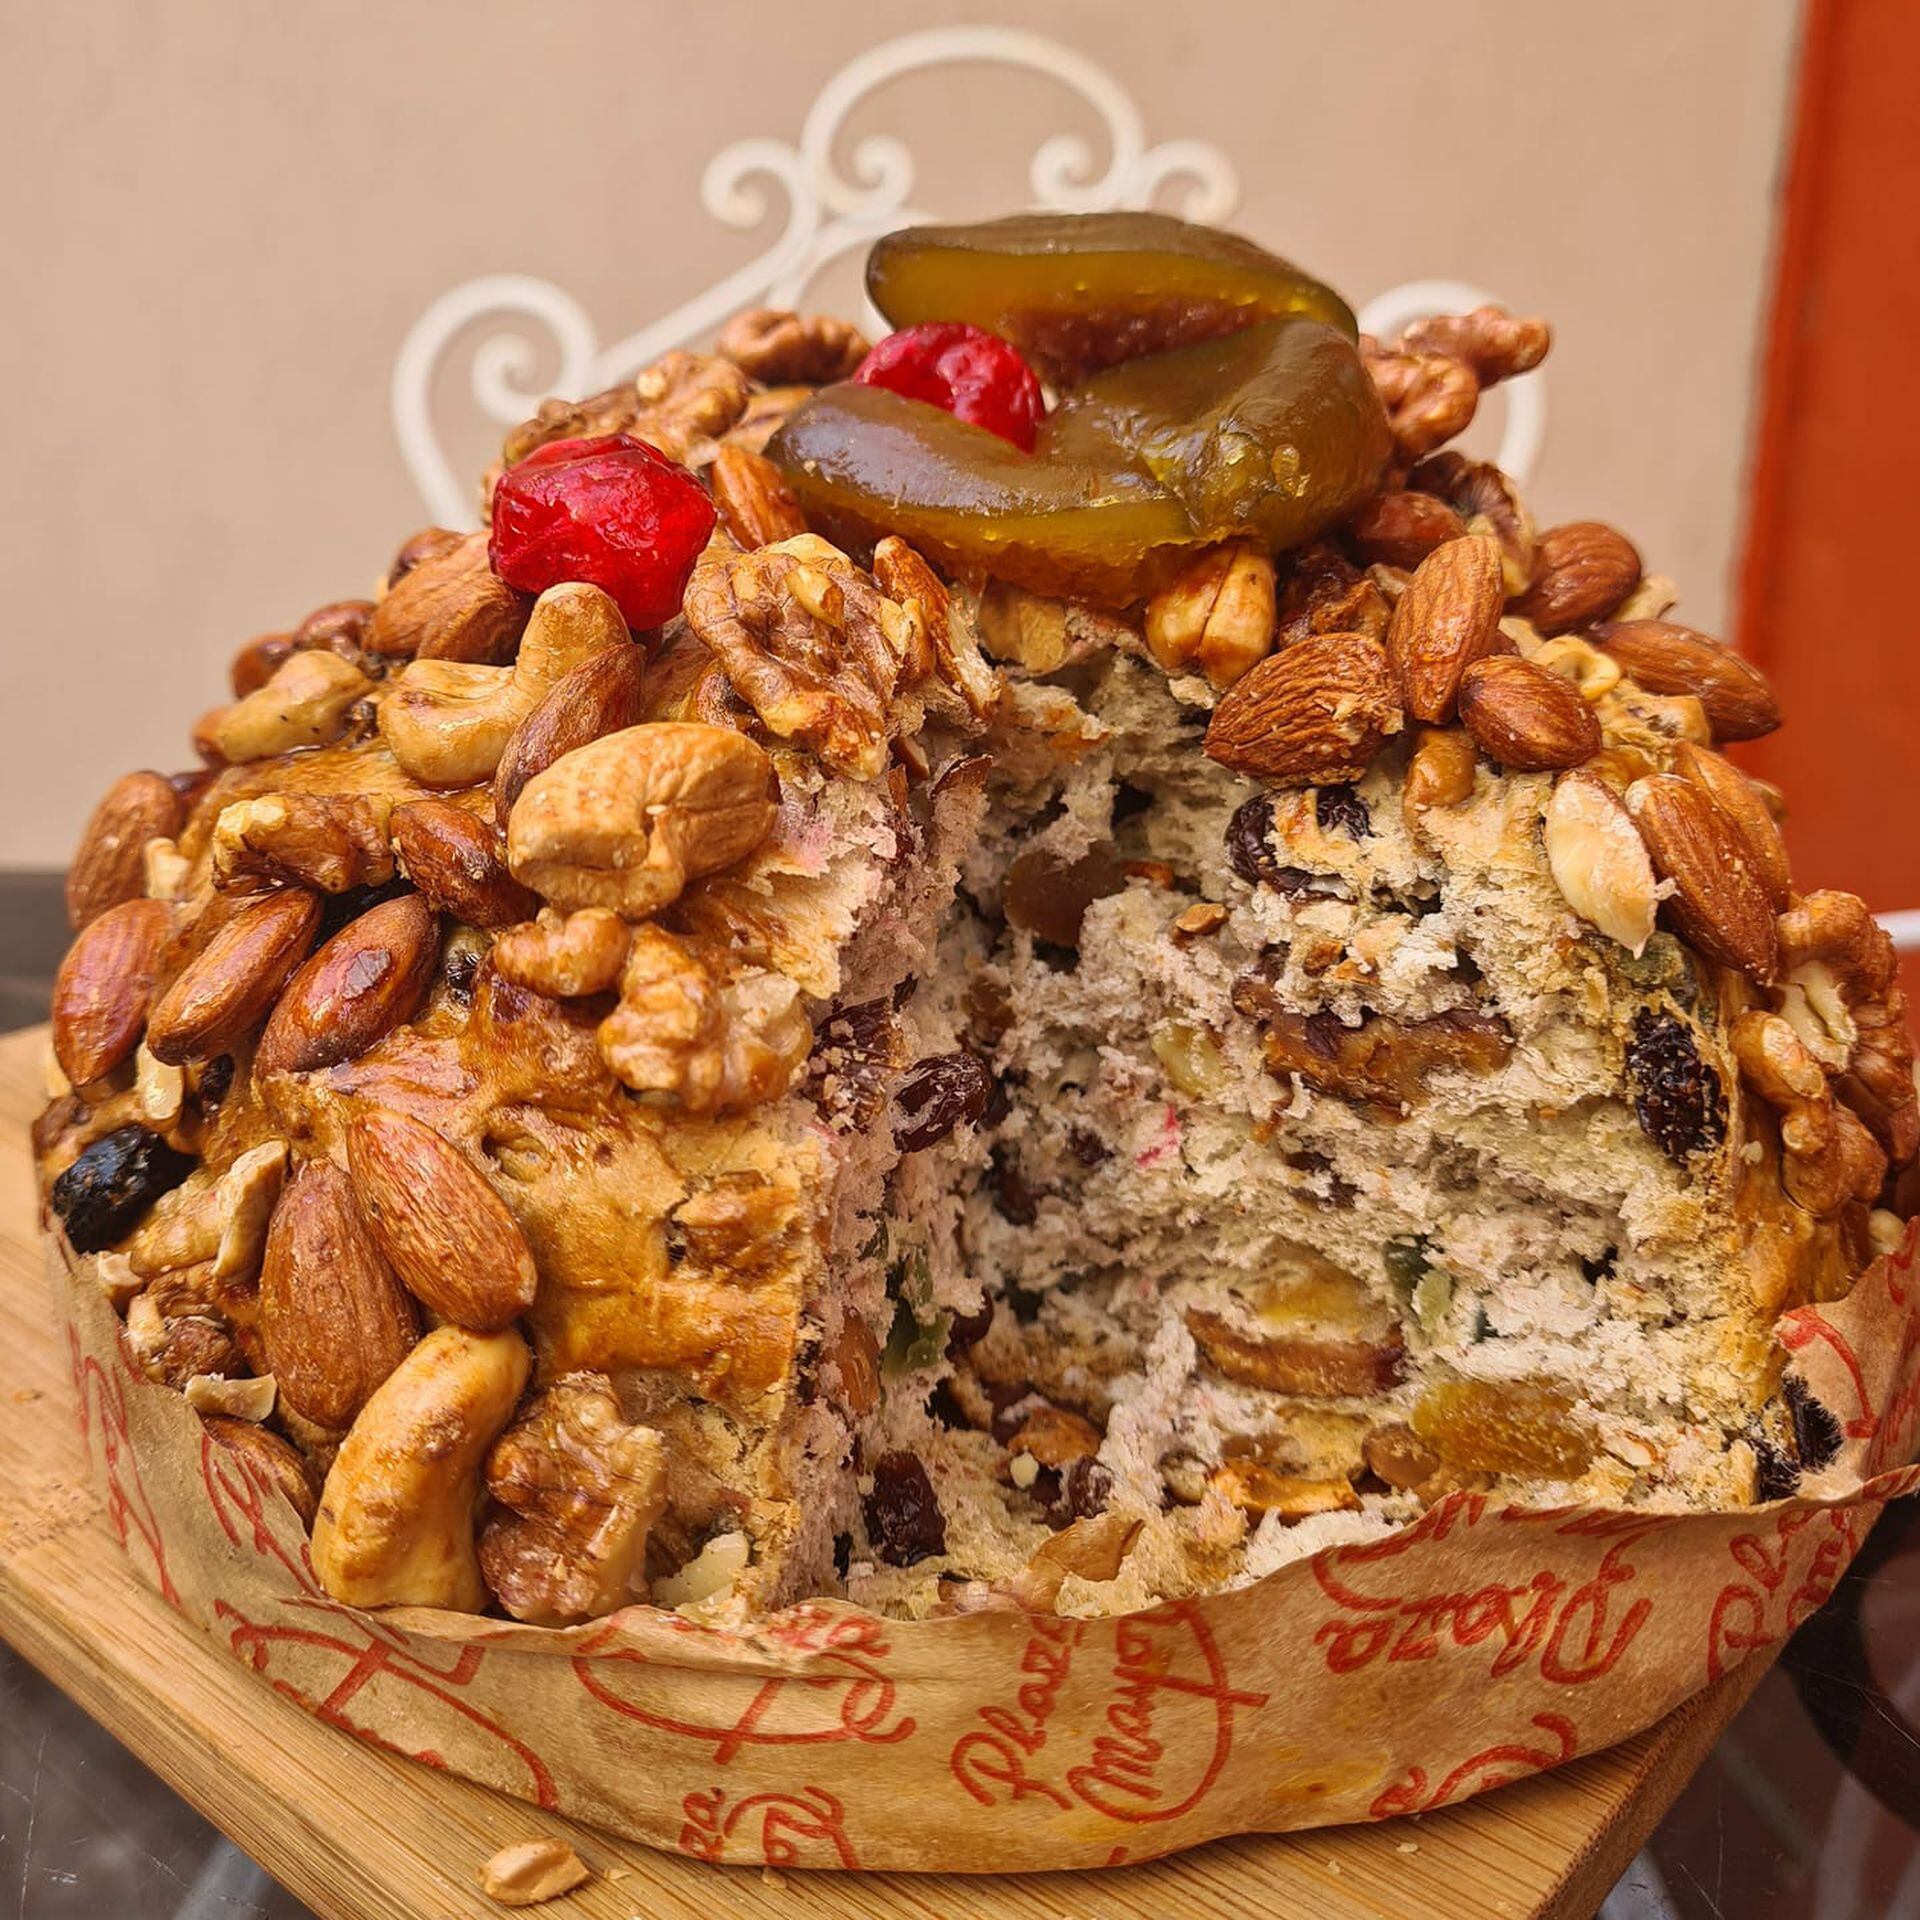 El pan dulce de Plaza Mayor, súper generoso en frutas y frutos secos, es pasión de multitudes. 